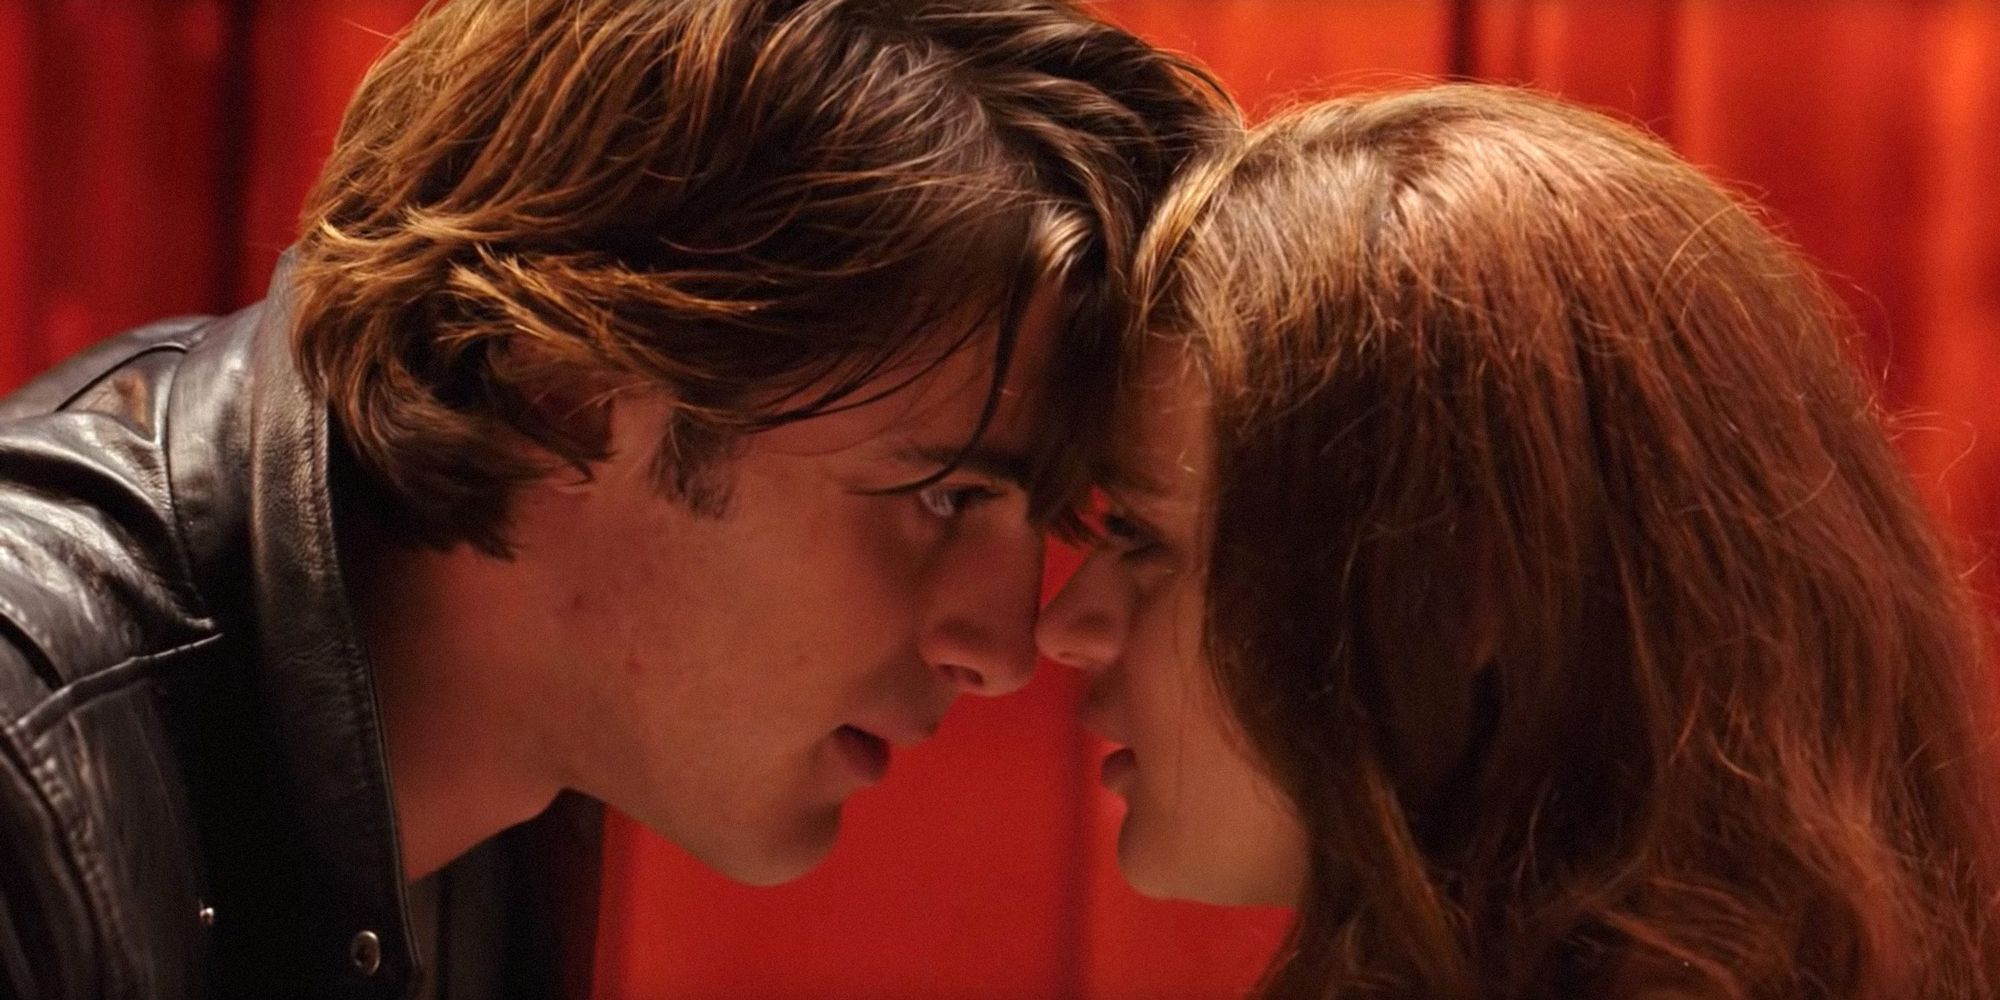 "Esas películas son ridículas": Jacob Elordi reflexiona sin rodeos sobre las películas de La cabina de los besos